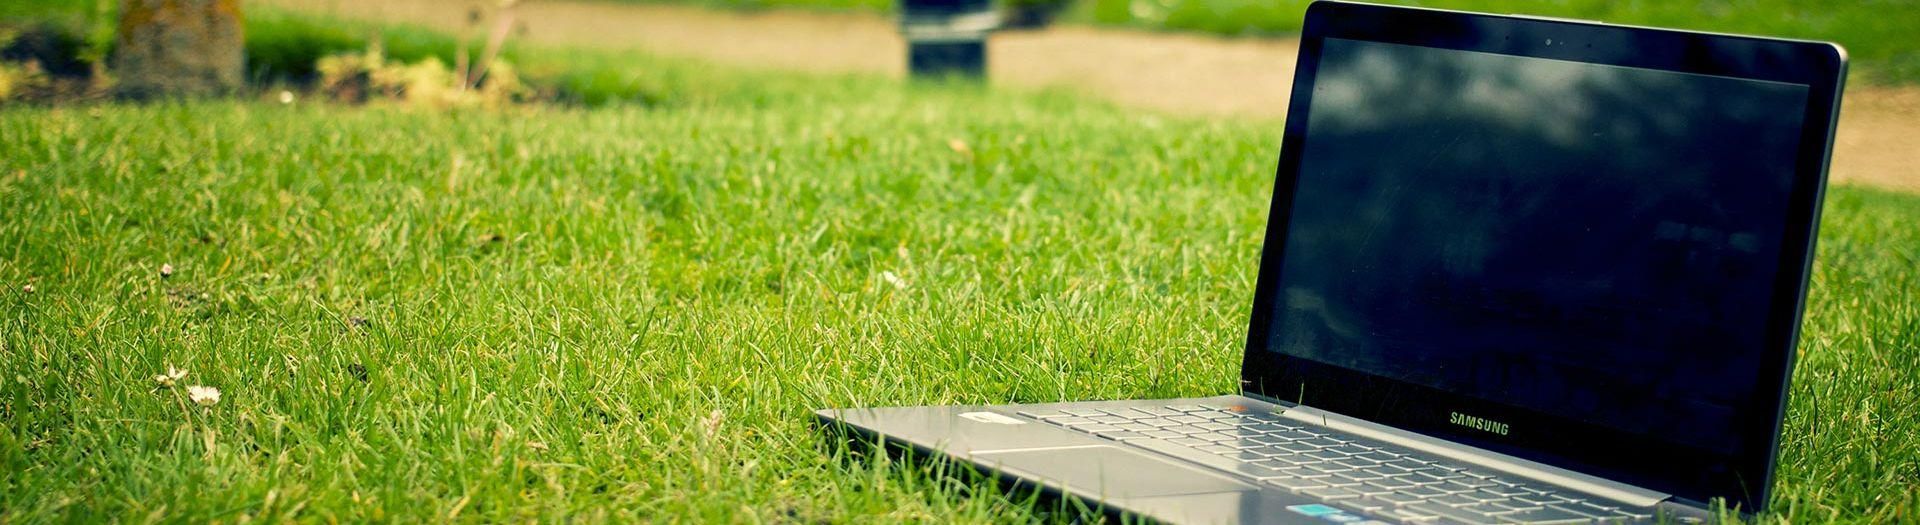 laptop-notebook-grass-meadow-9b558d75 Custom Online | BRIGHT Software B.V.